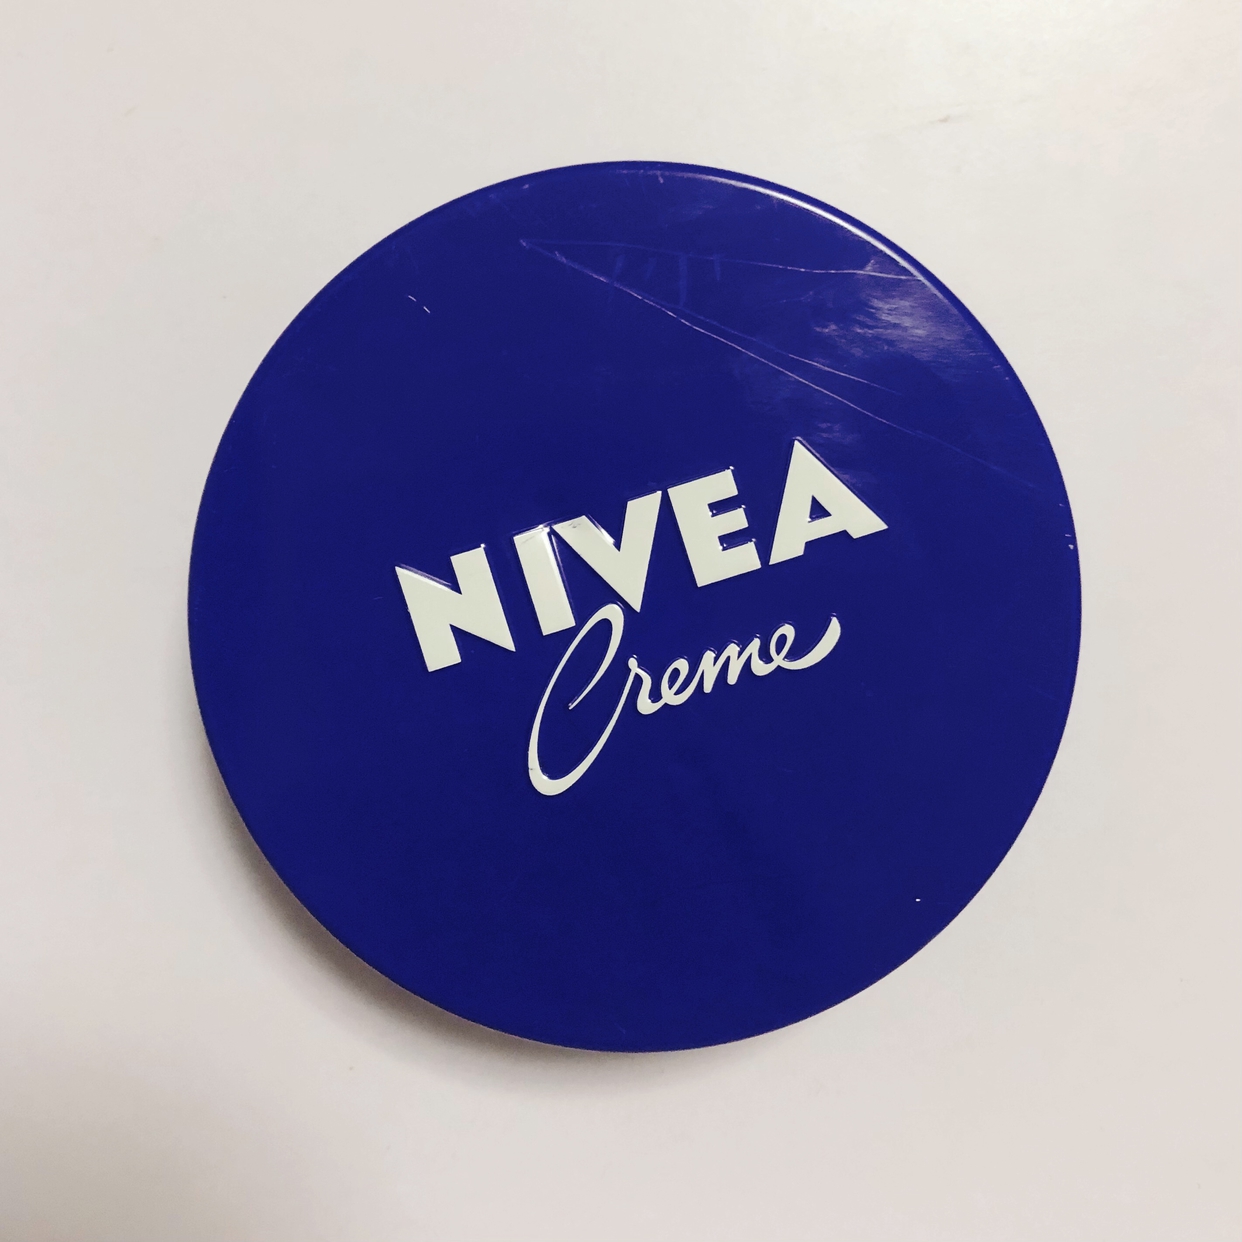 NIVEA(ニベア) クリーム(大缶)を使ったみゆさんのクチコミ画像1